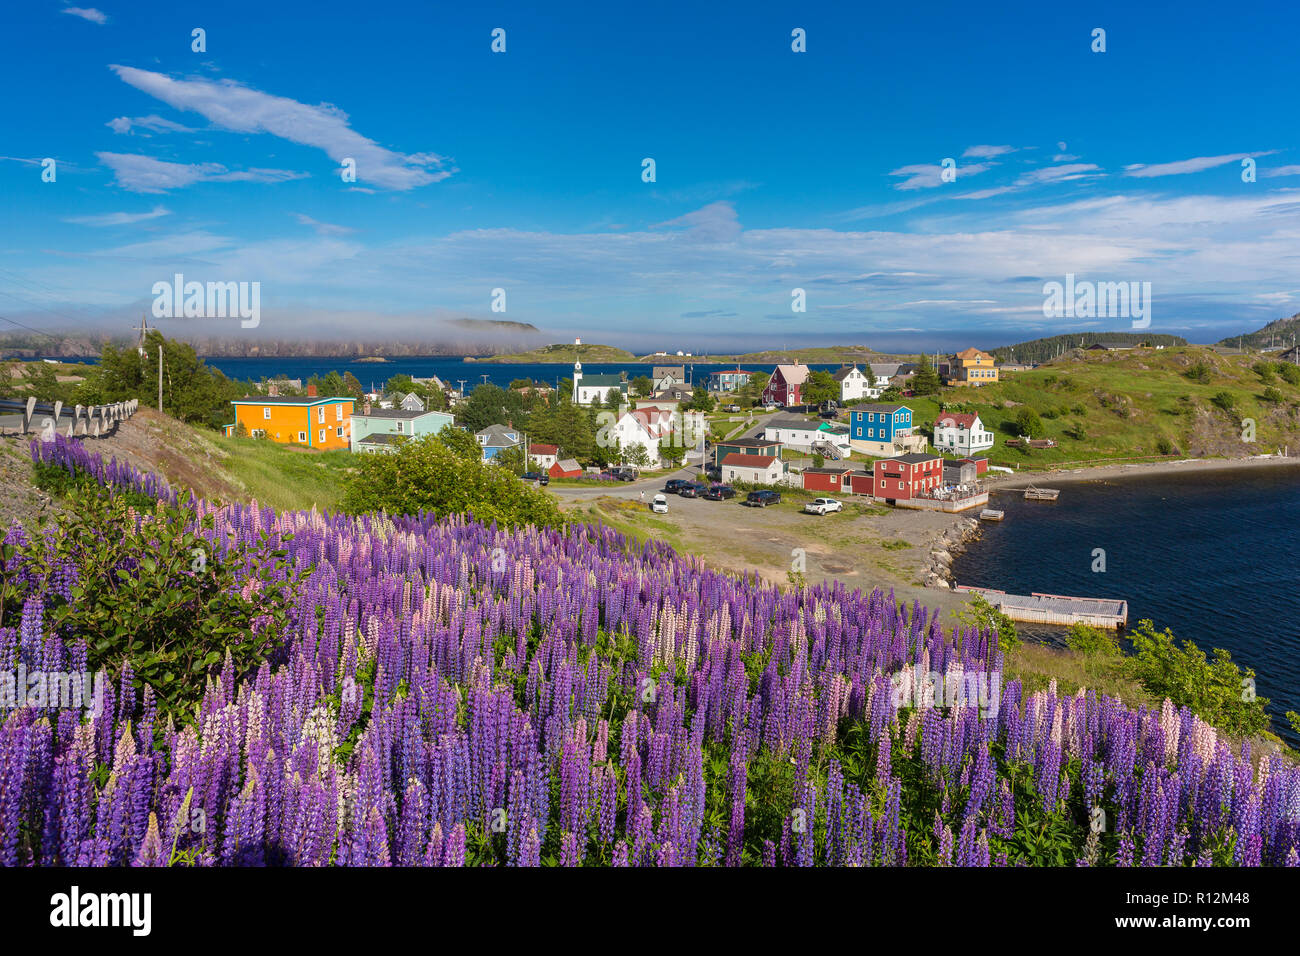 Dreifaltigkeit, Neufundland, Kanada - Lila Lupine Blüte bei der kleinen Stadt Trinity. Lupinus Stockfoto